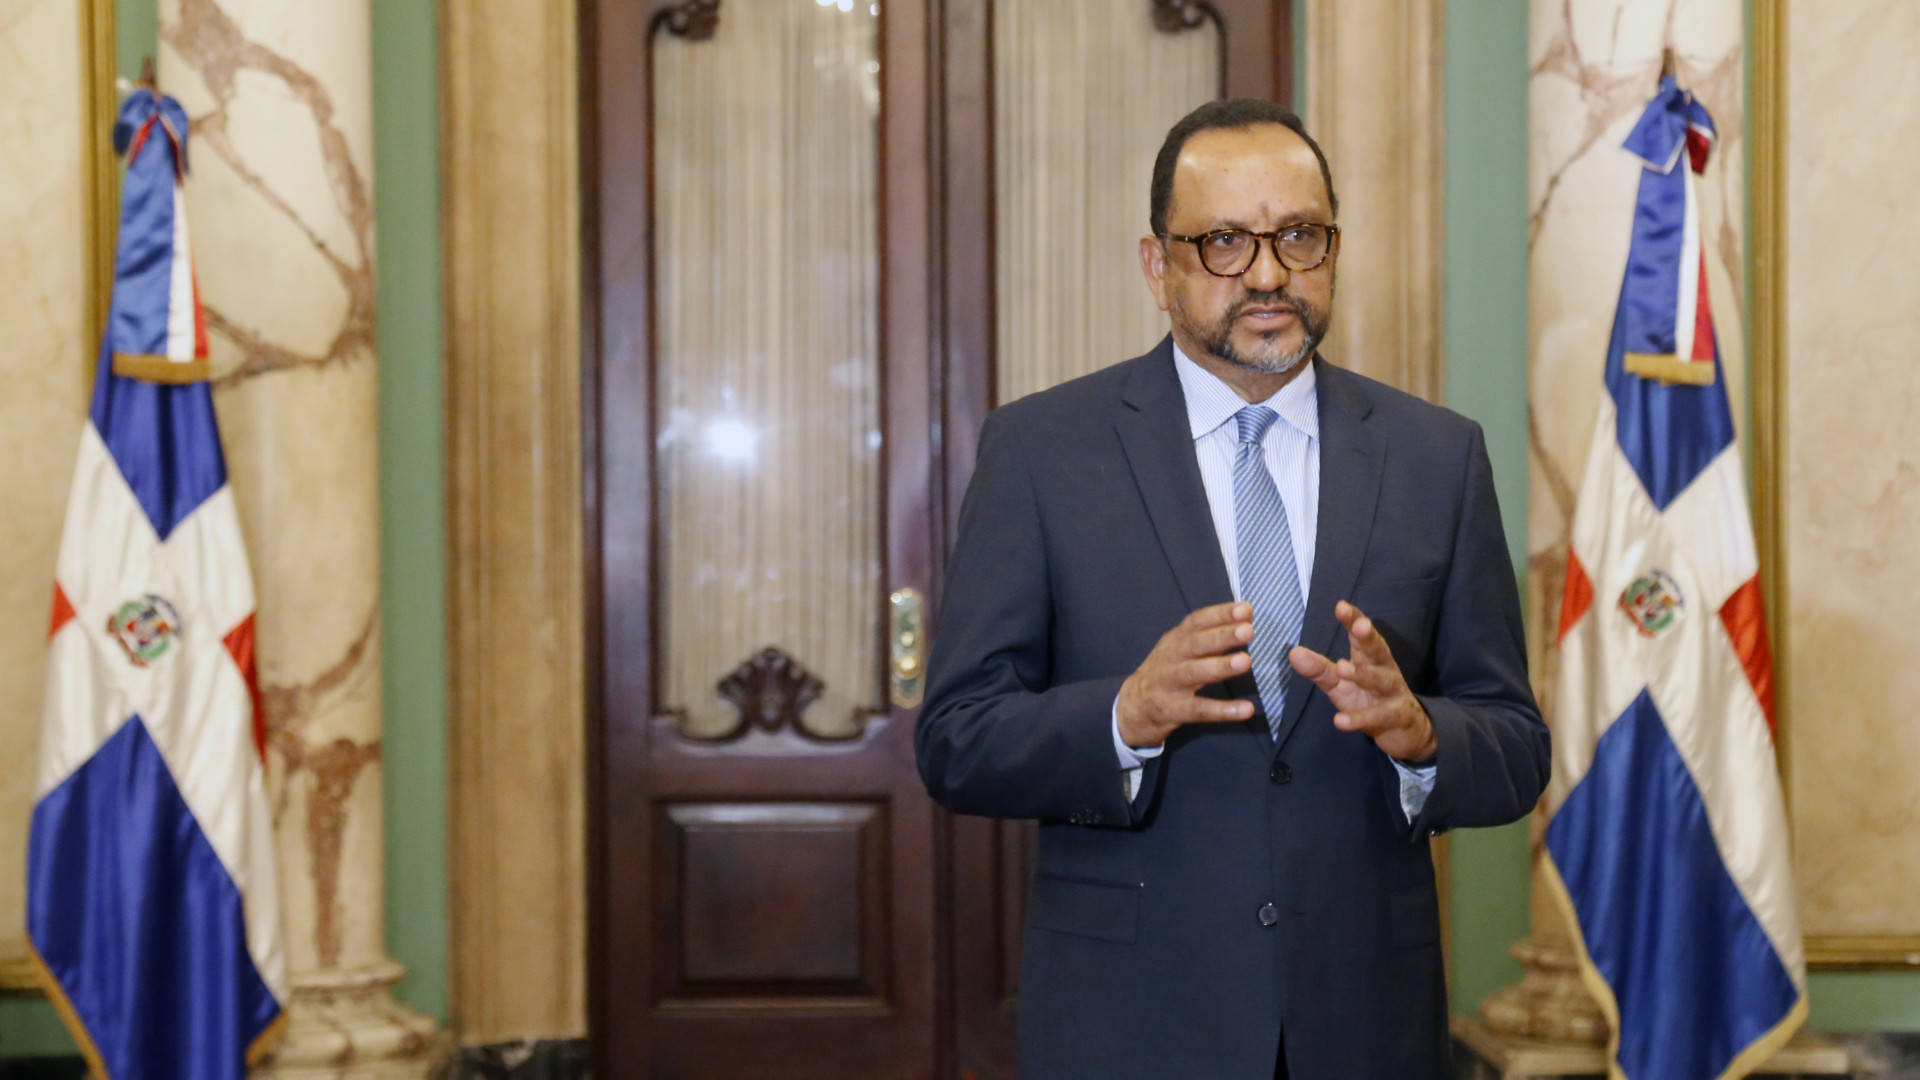 REPÚBLICA DOMINICANA: Consejo Nacional de la Magistratura aprueba cronograma de evaluación de aspirantes al Tribunal Constitucional